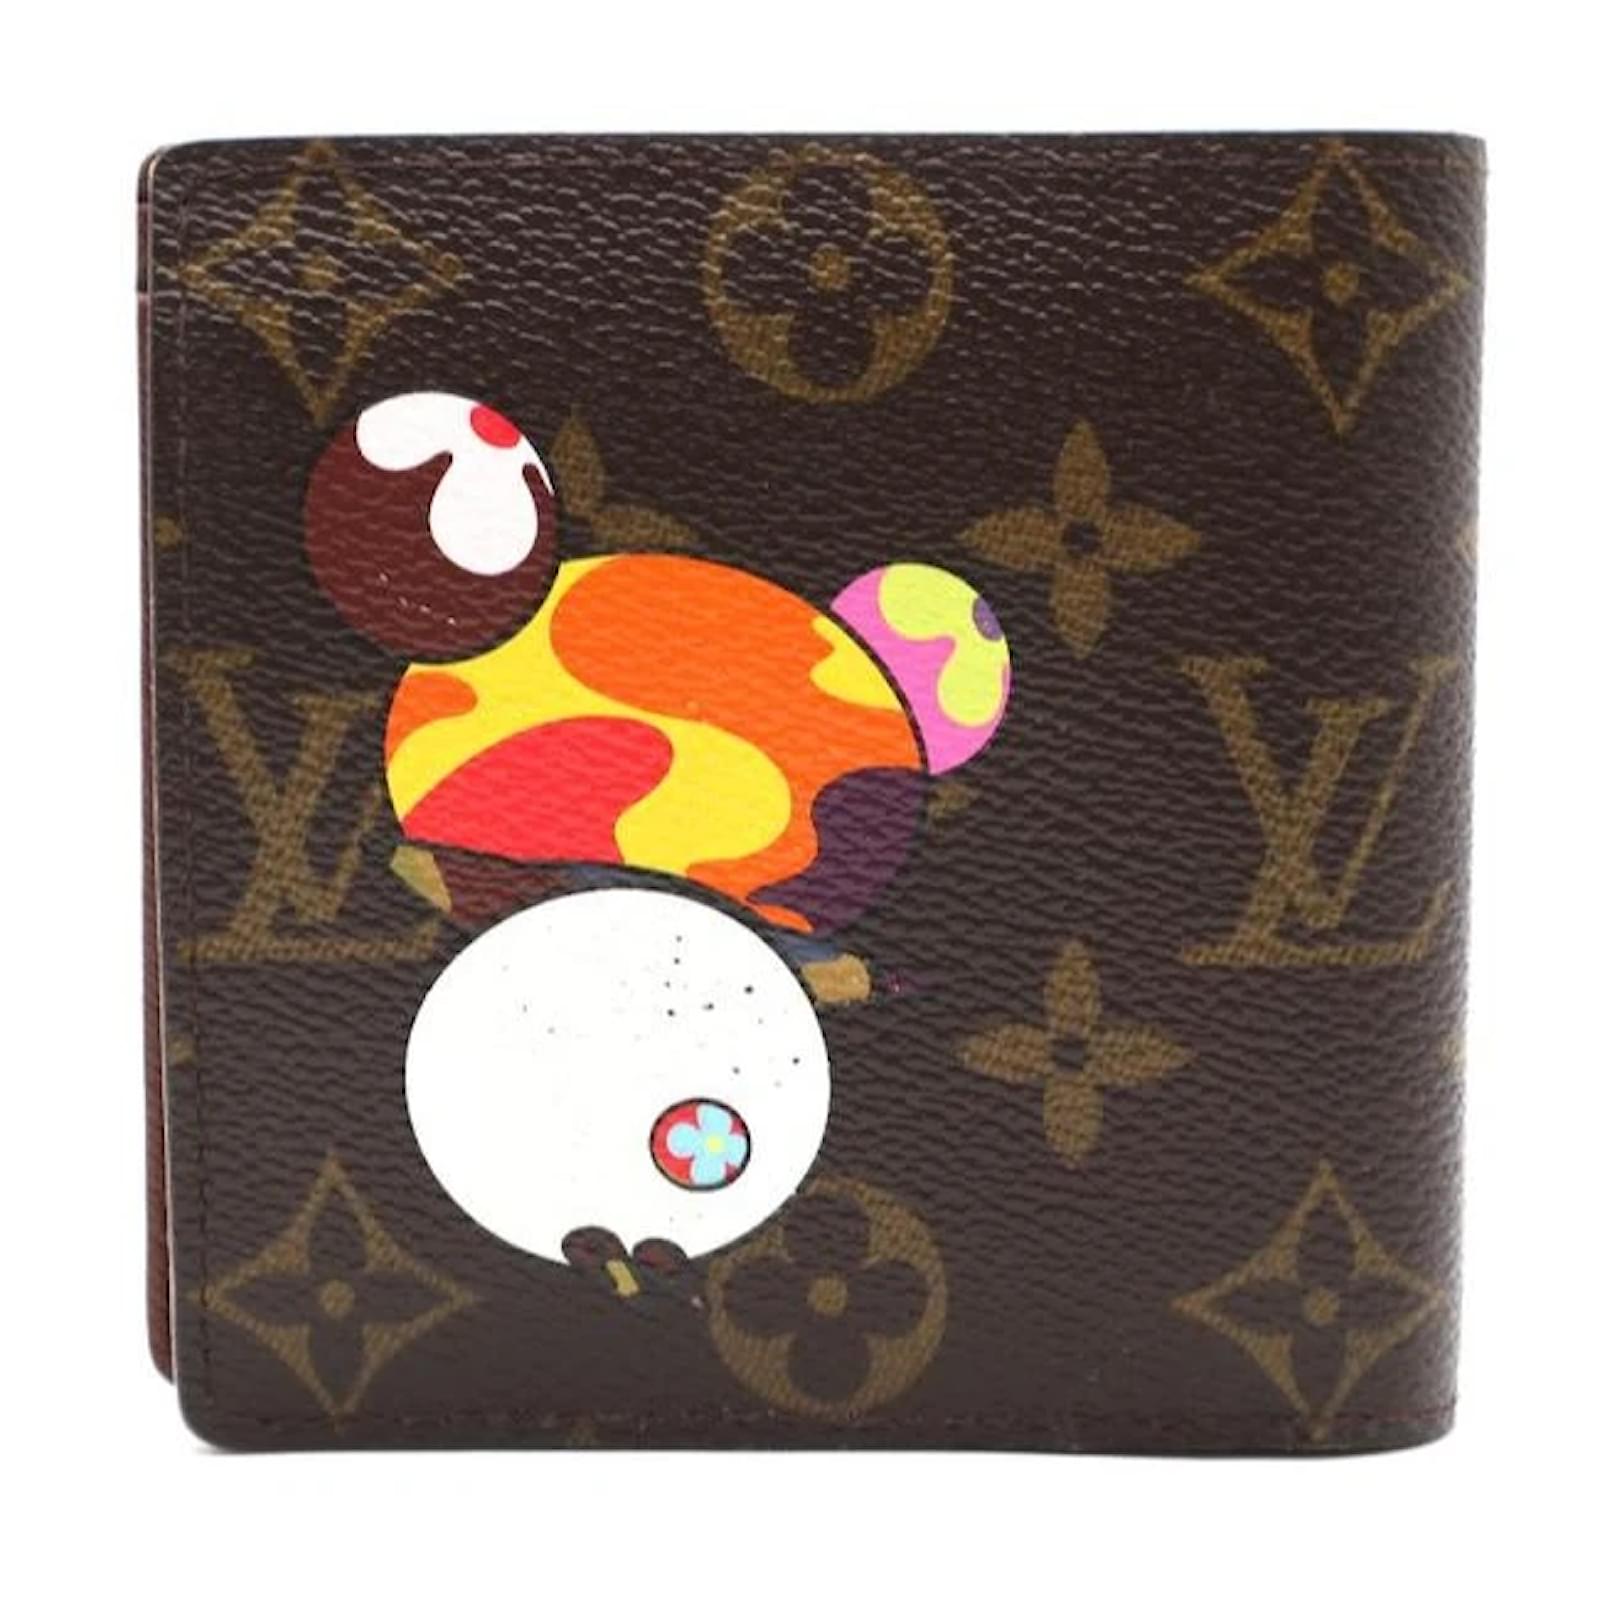 Louis Vuitton X Takashi Murakami Monogram Panda Long Wallet NEW at